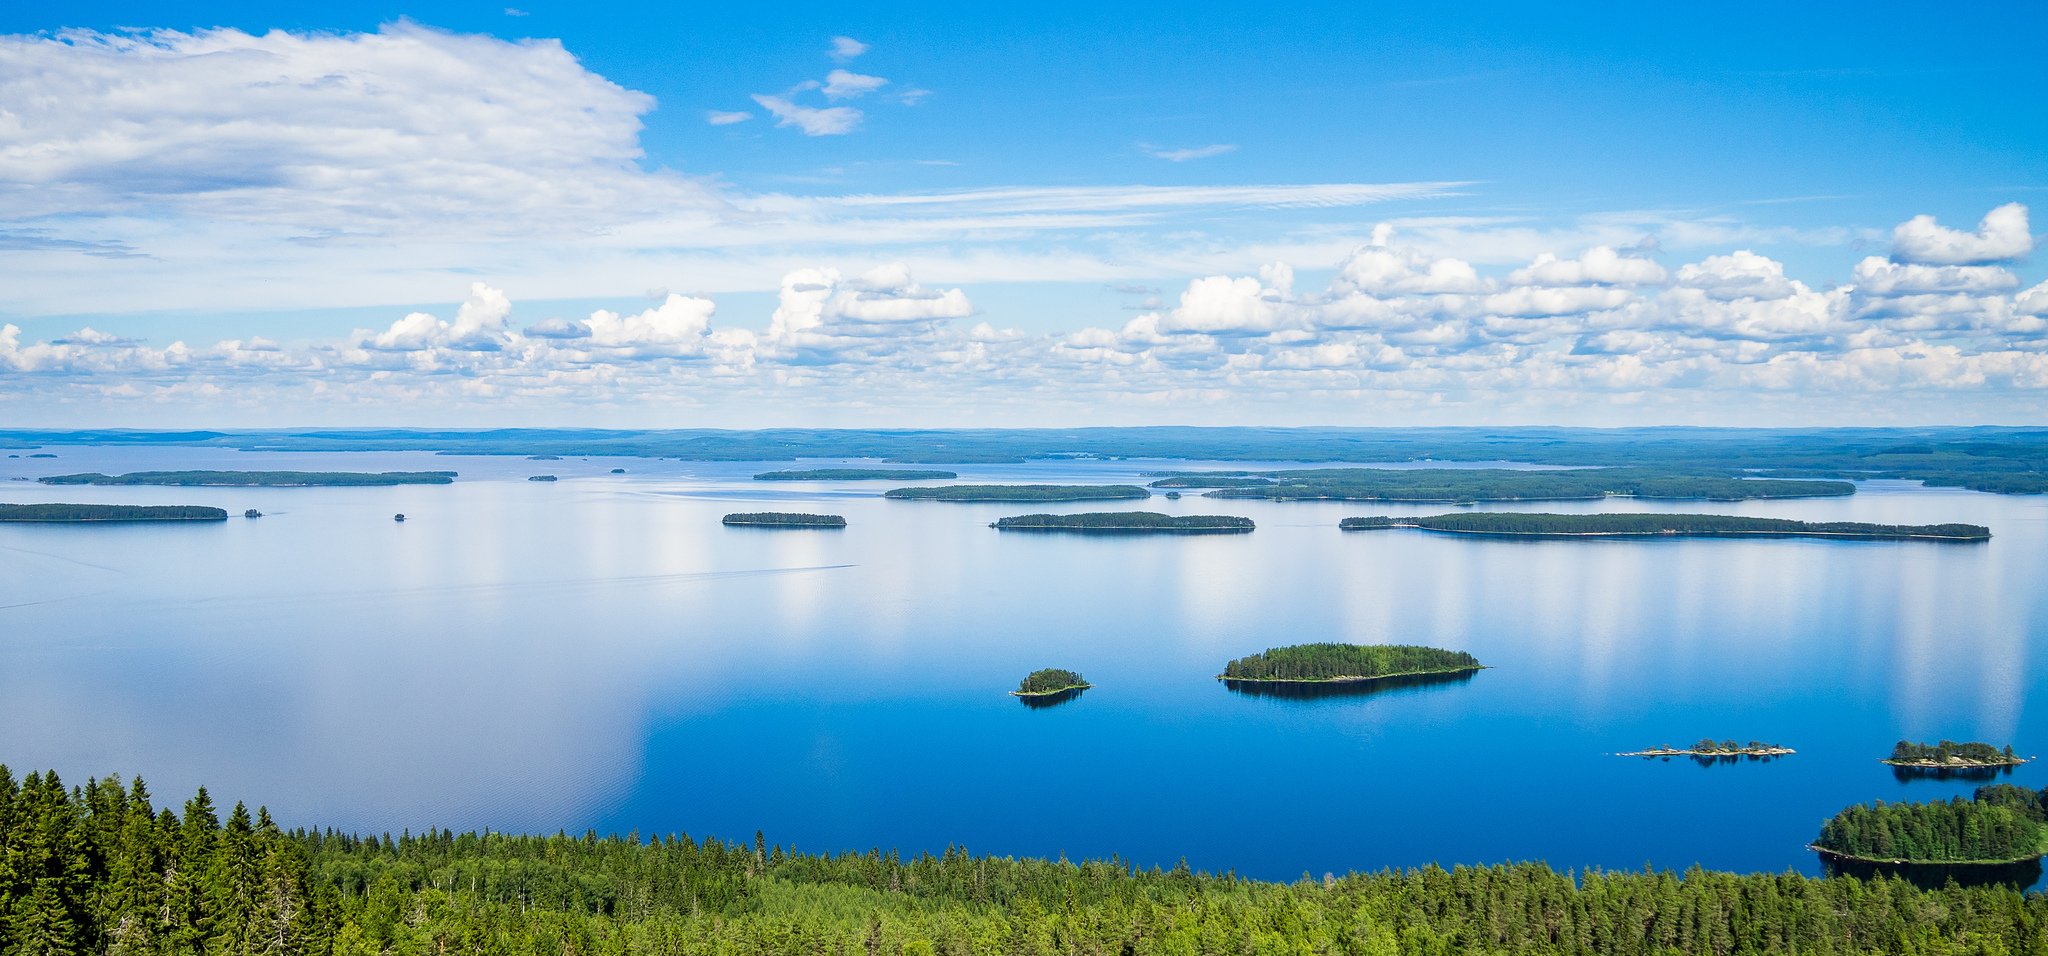 Названия финских озер. Озеро Пиелинен Финляндия. Озеро Сайма Финляндия. Озеро Суоми Финляндия. Озеро Штерн Финляндия.